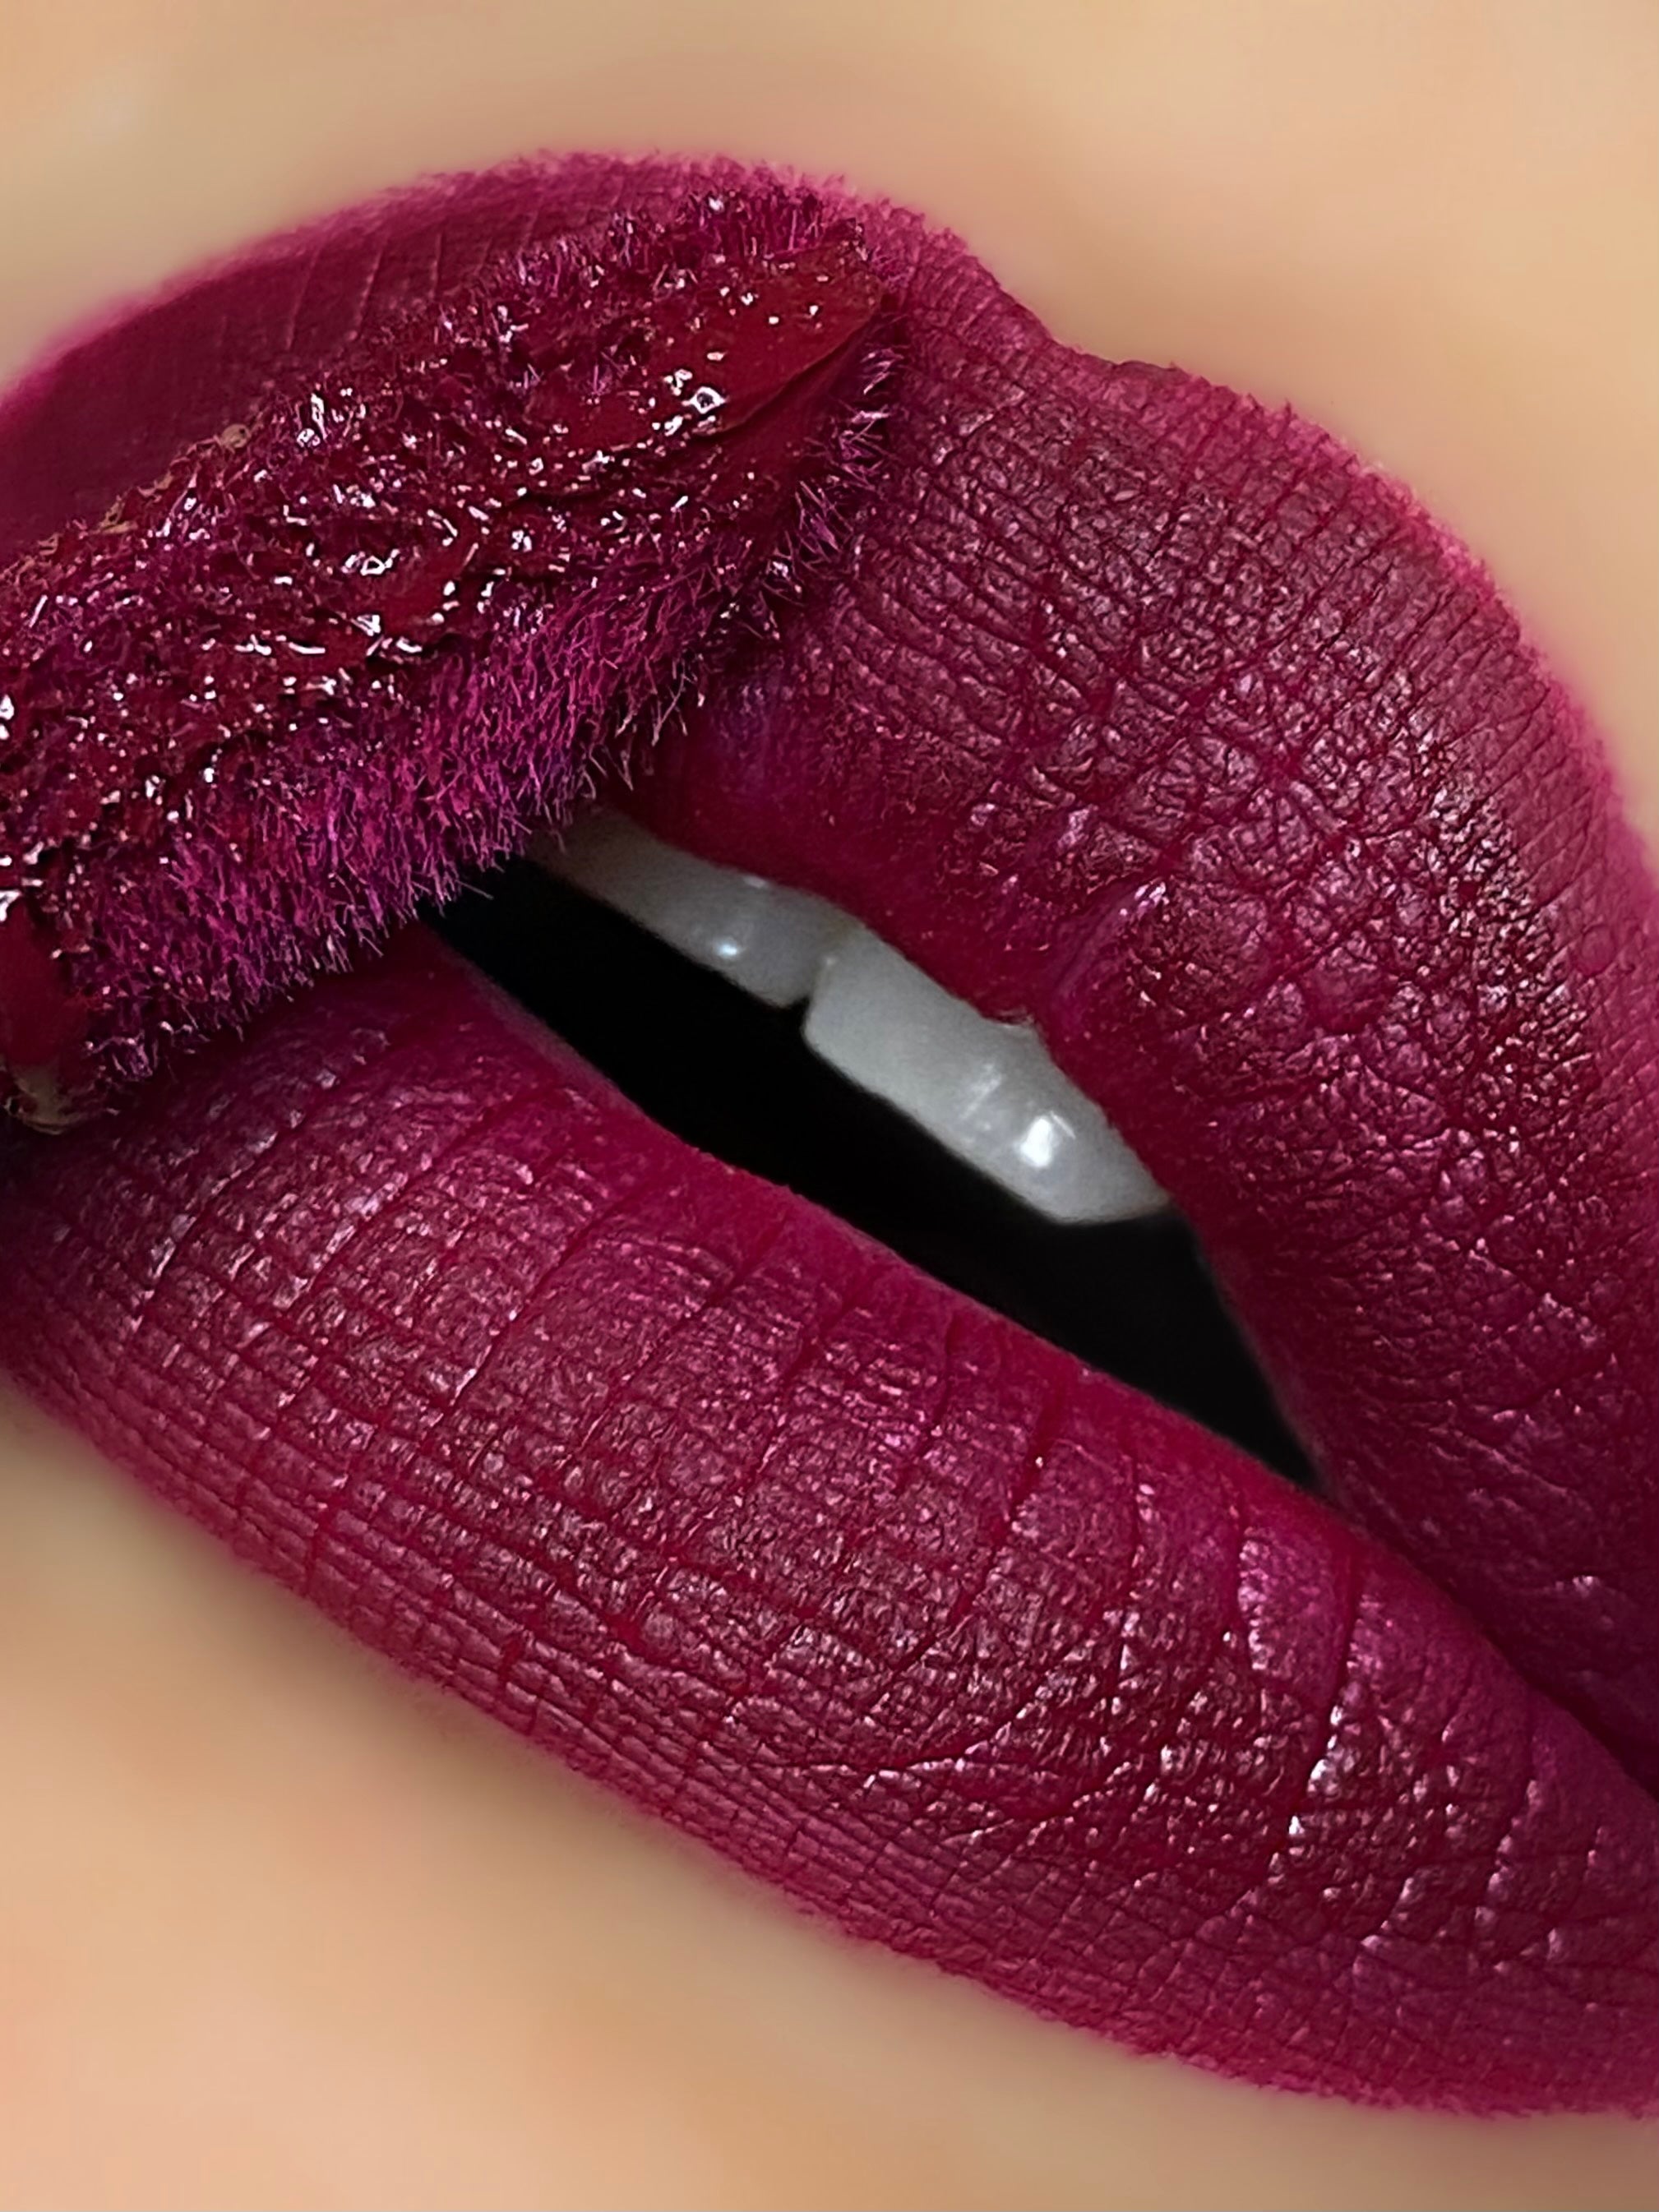 The Best Red Lipsticks For Badass Women  URBAN GILT